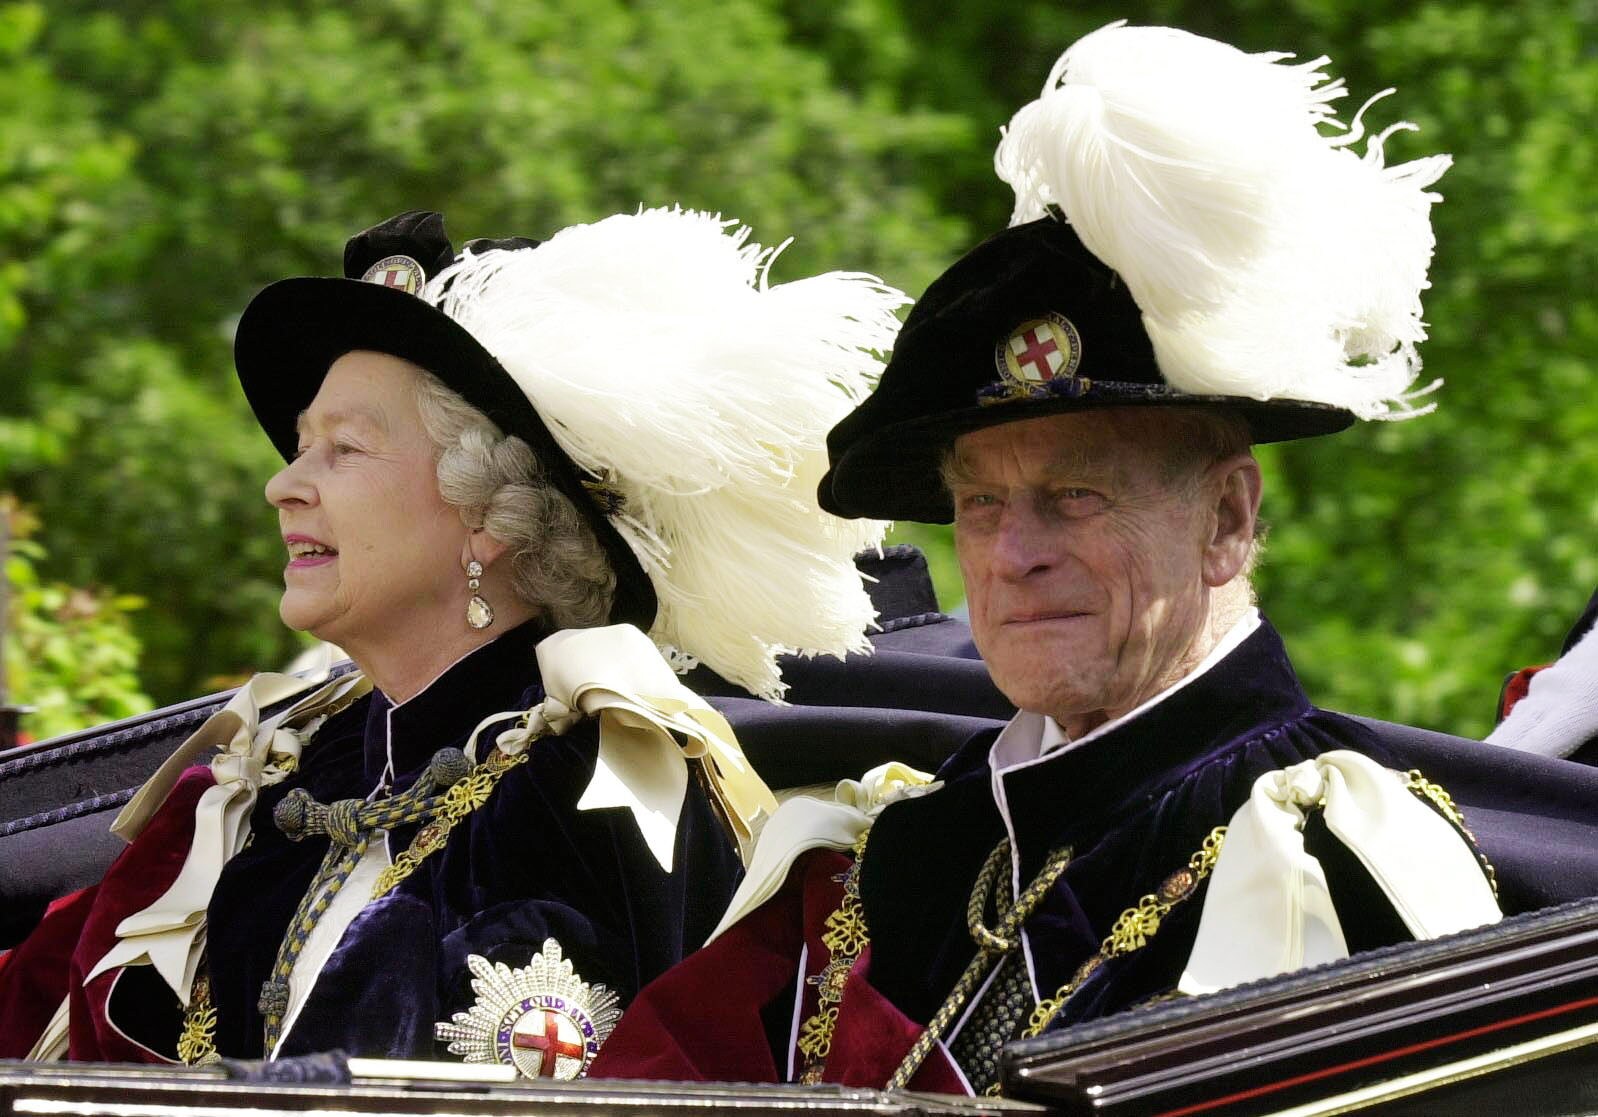 La reina Isabel y el duque de Edimburgo, vestidos con sus túnicas de la Orden de la J en arretera, viajan en un carruaje descubierto hasta el castillo de Windsor en junio de 2001.